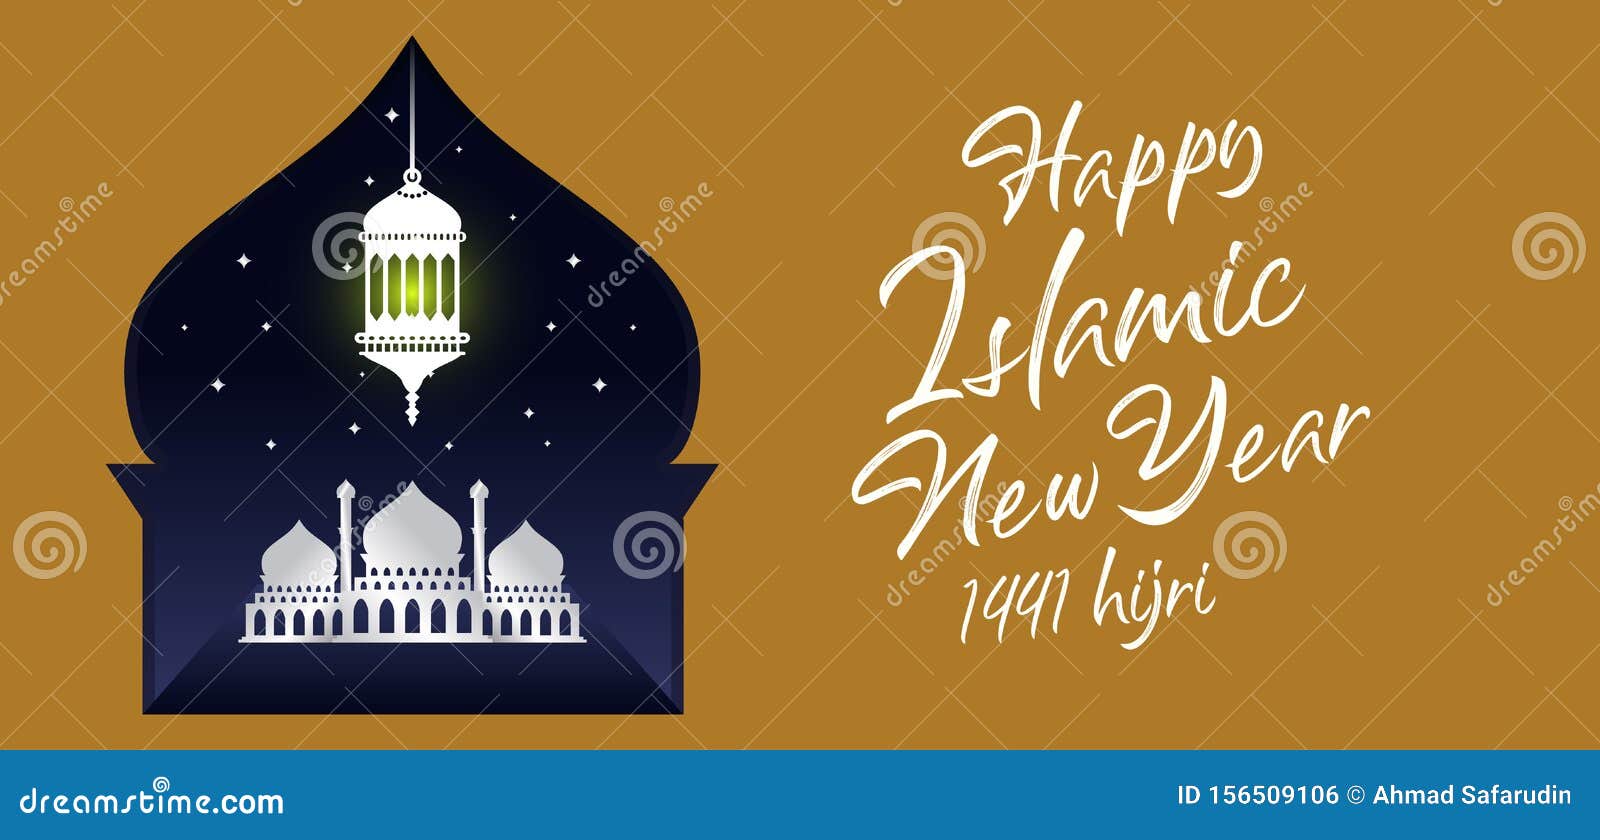 Buon nuovo stile Hijri, stile tipografico dell'anno islamico, con moschea ed elegante illustrazione vettoriale